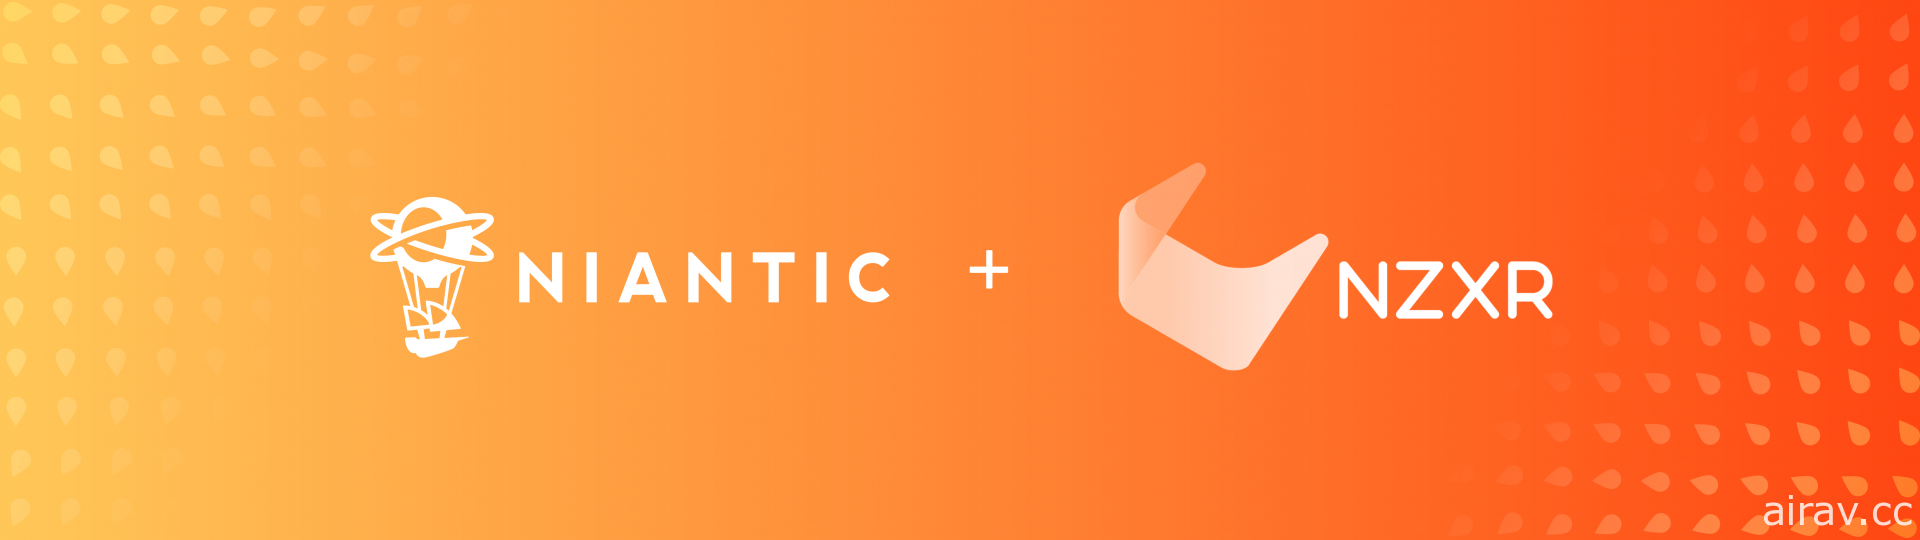 Niantic 宣布收購紐西蘭 AR 工作室 NZXR  一同打造多人真實世界 AR 體驗環境